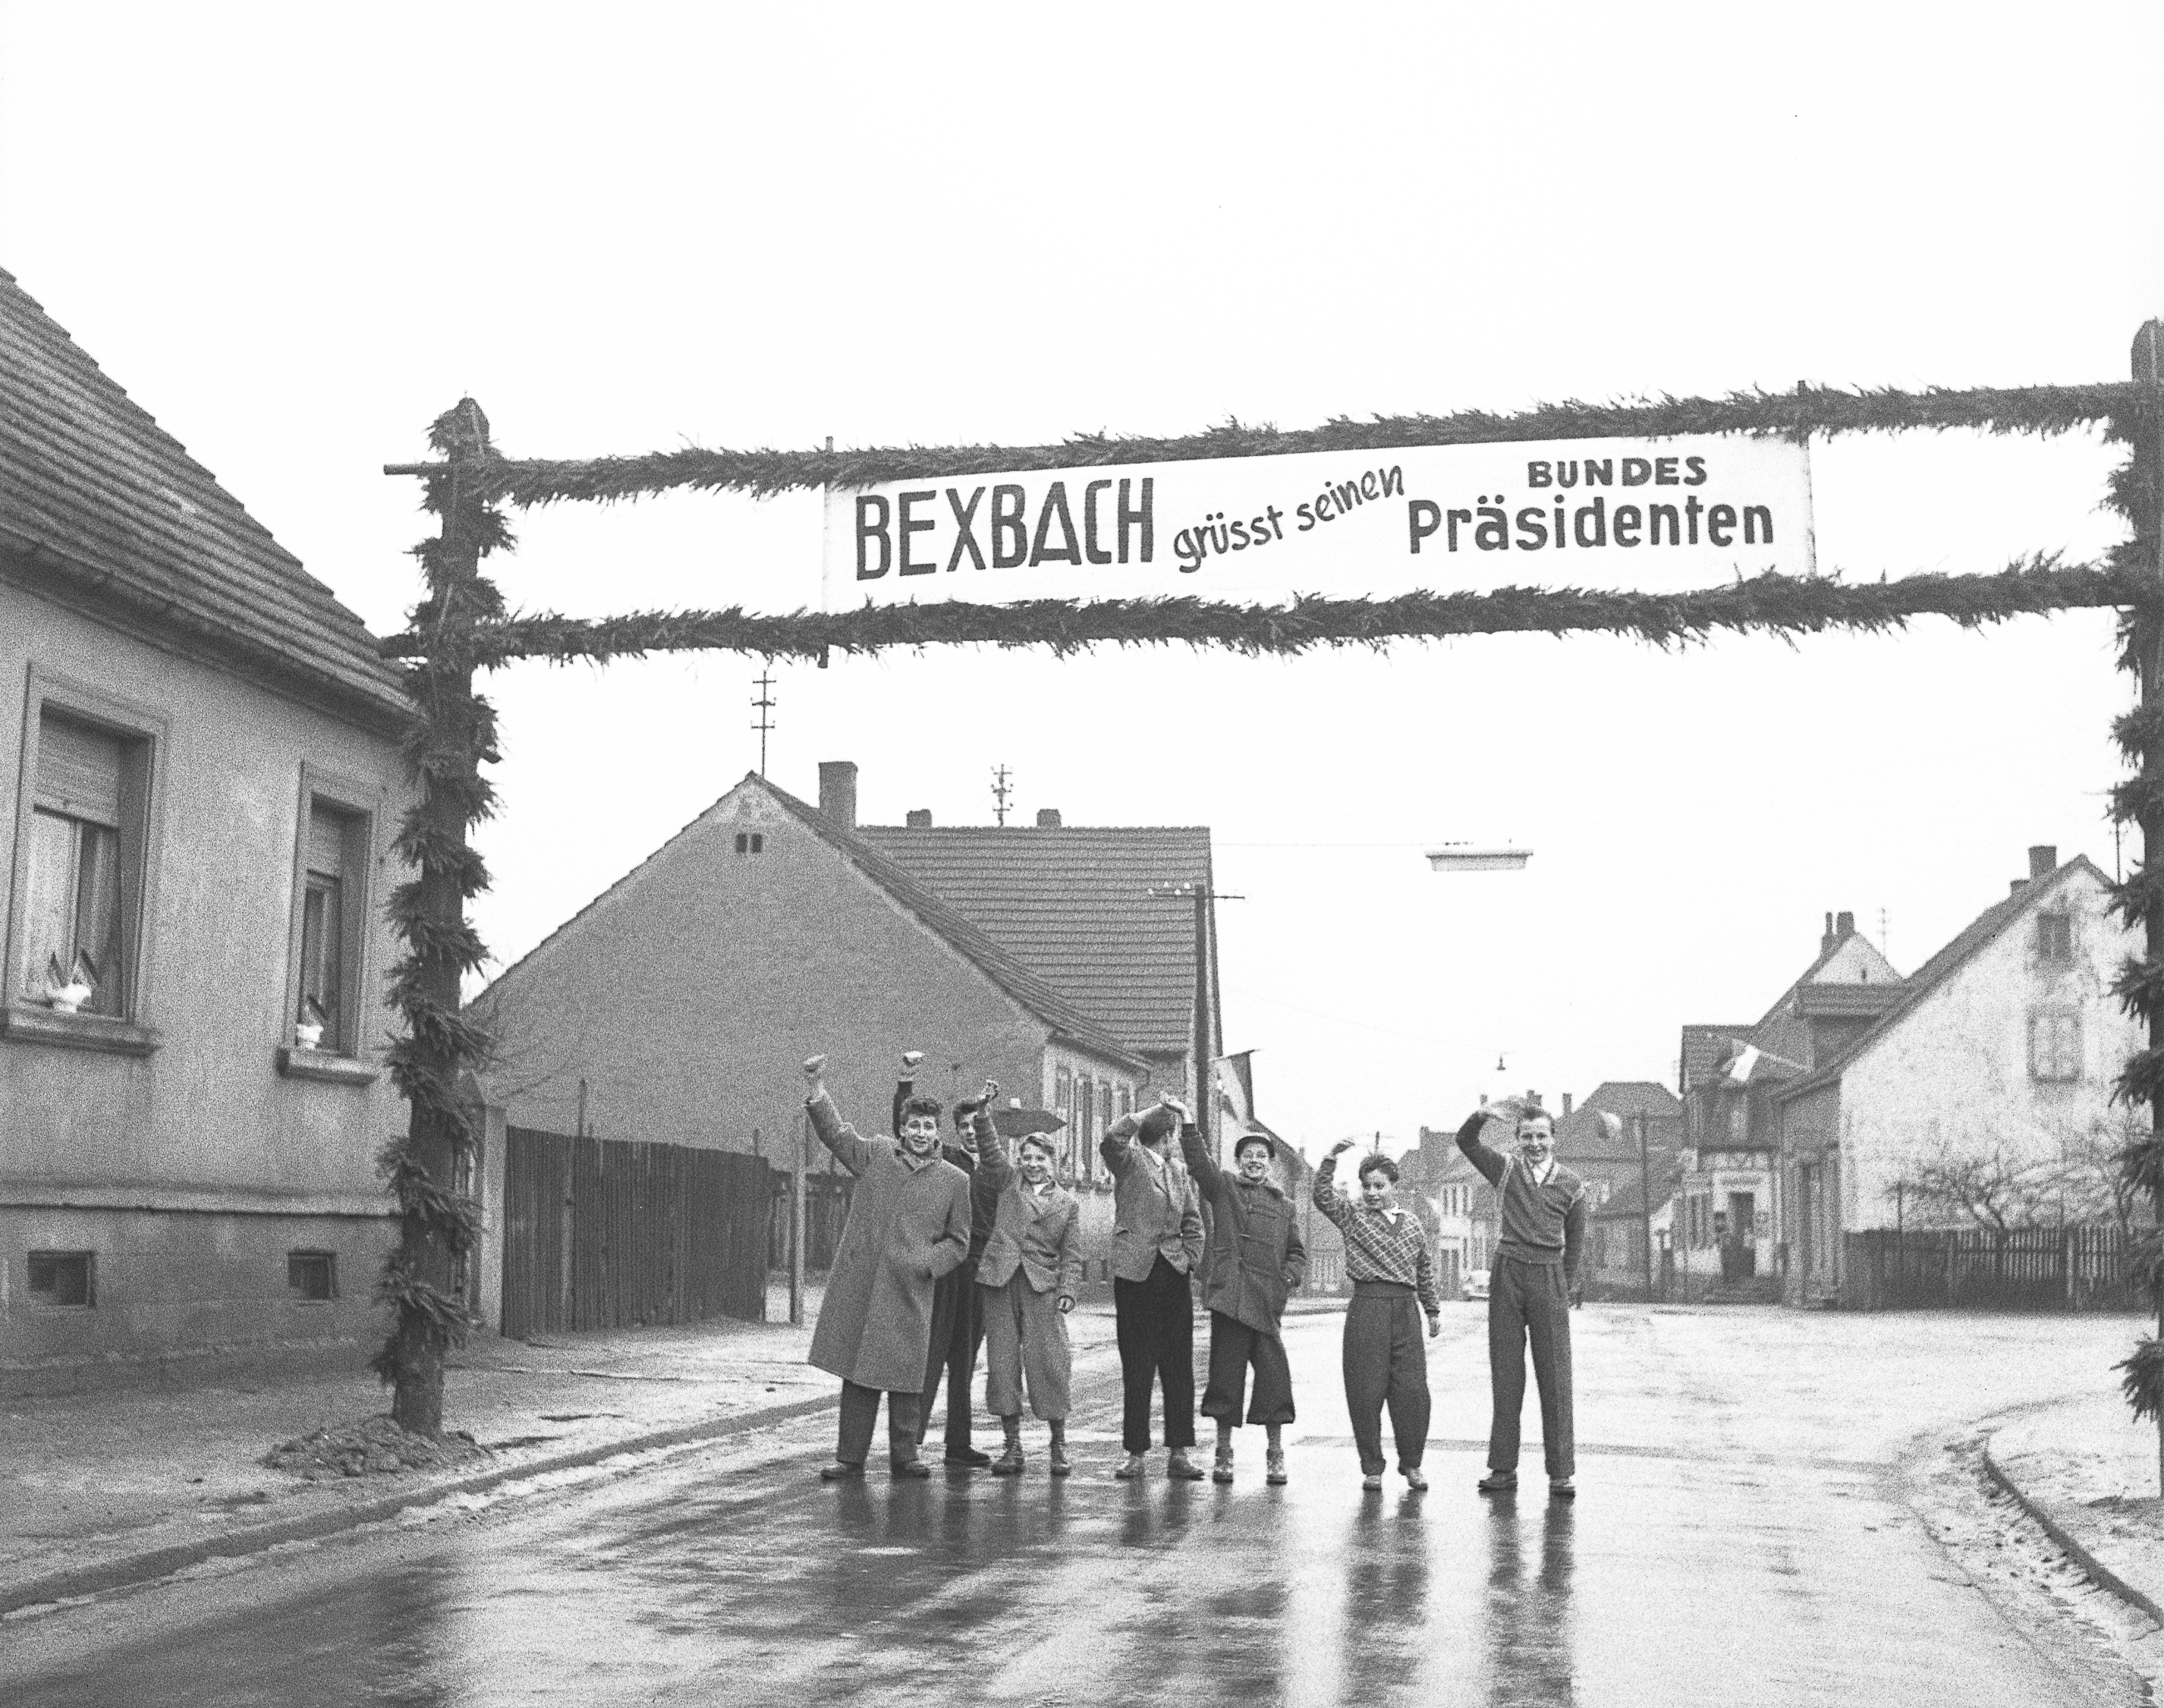 In Bexbach wird Bundespräsident Theodor Heuss von jubelnden Kindern erwartet.